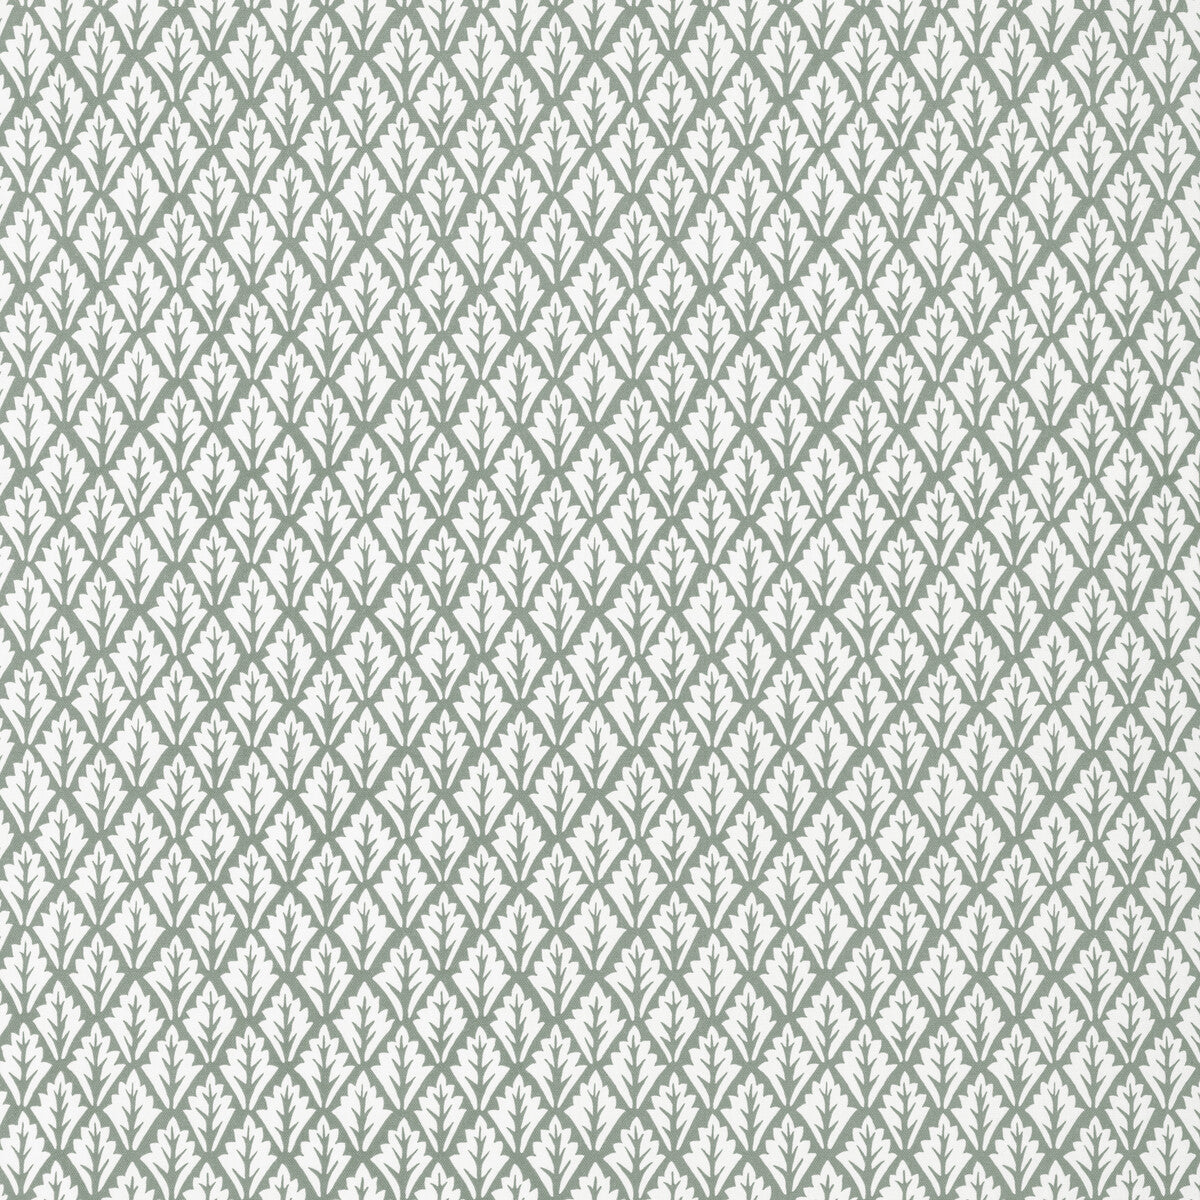 Dorso fabric in pewter color - pattern DORSO.1101.0 - by Kravet Basics